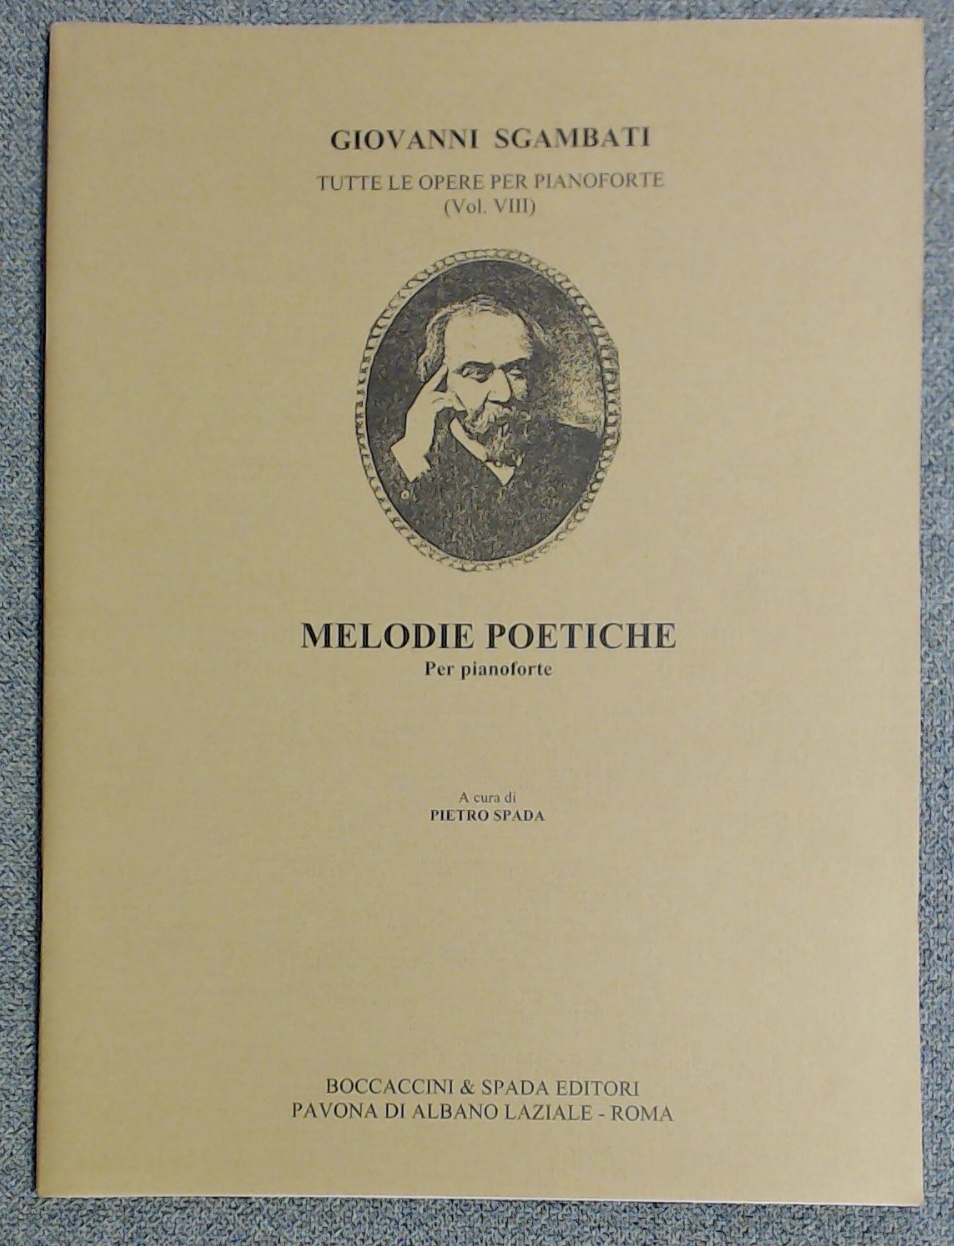 Giovanni Sgambati Poetic Melodies (Melody Poetiche) Pietro Spada - Click Image to Close